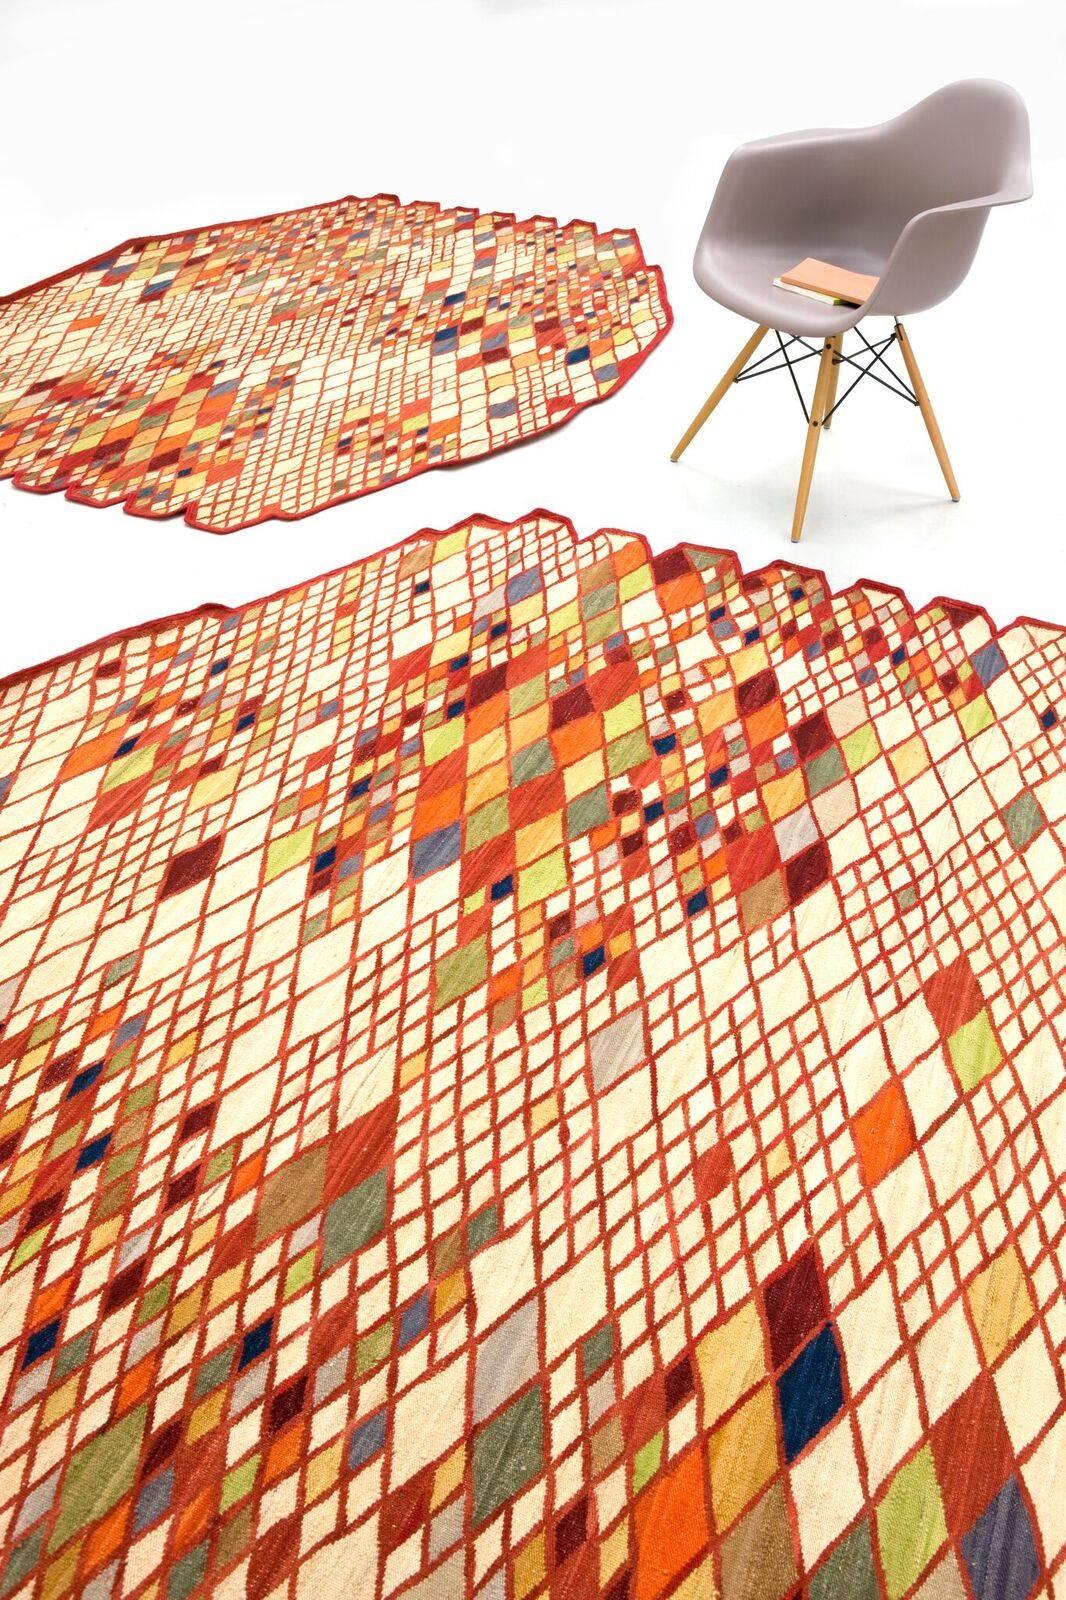 Avec la collection Losanges, les frères Bouroullec poursuivent leur étude de la simplicité et de l'élégance, en réinterprétant le tapis persan traditionnel grâce aux techniques anciennes du Rug & Kilim.

Techniquement complexe, la collection